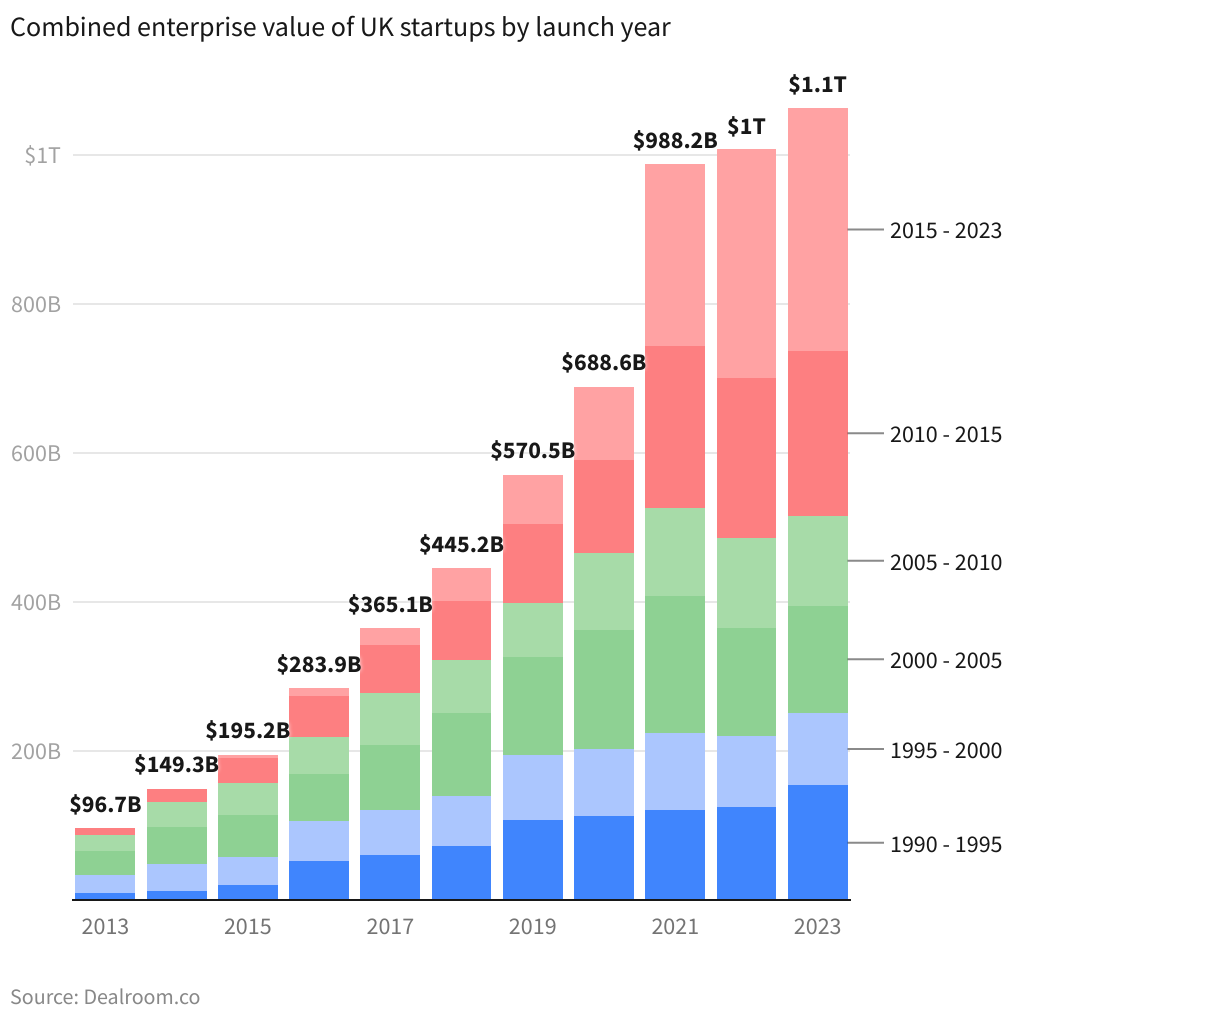 By 2023, the UK startup ecosystem was worth around $1.1 trillion (£897 billion).